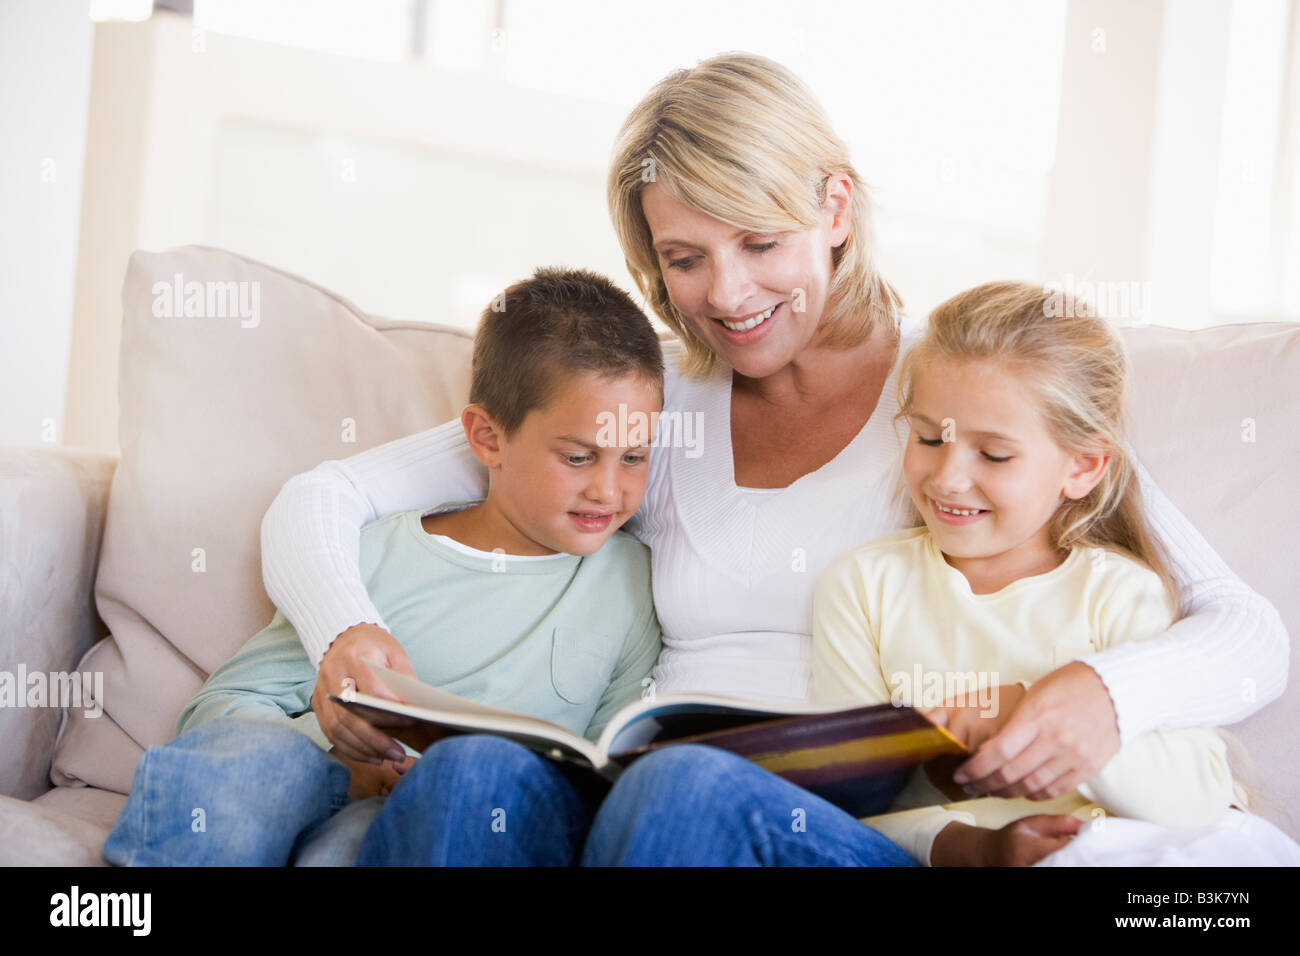 Donna e due bambini seduti nella sala lettura prenota e sorridente Foto Stock